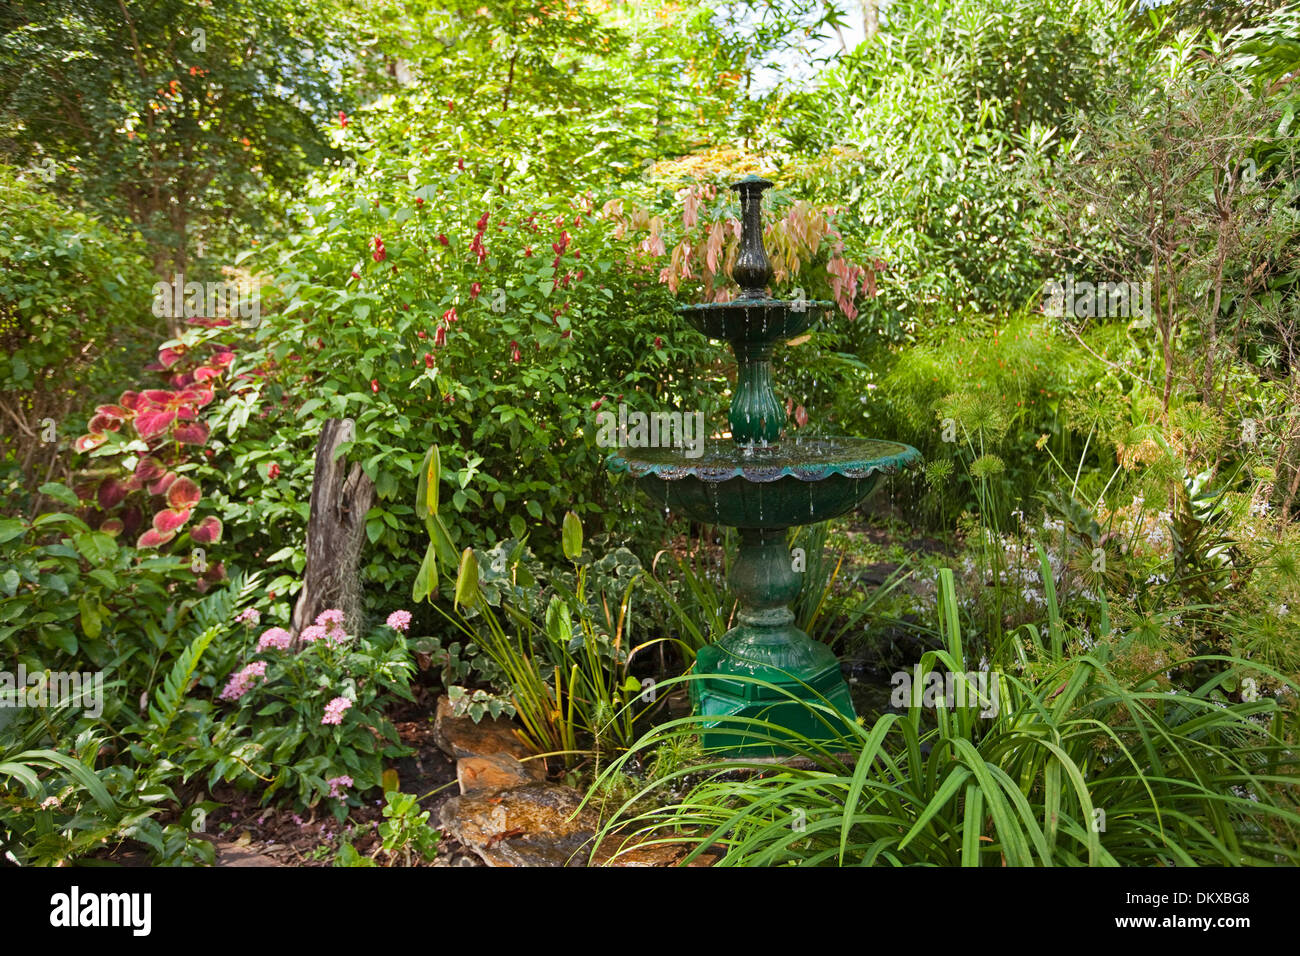 Espectacular exuberante jardín sub-tropical con fuente decorativa de agua esmeralda, característica de follaje, flores y arbustos perennes Foto de stock